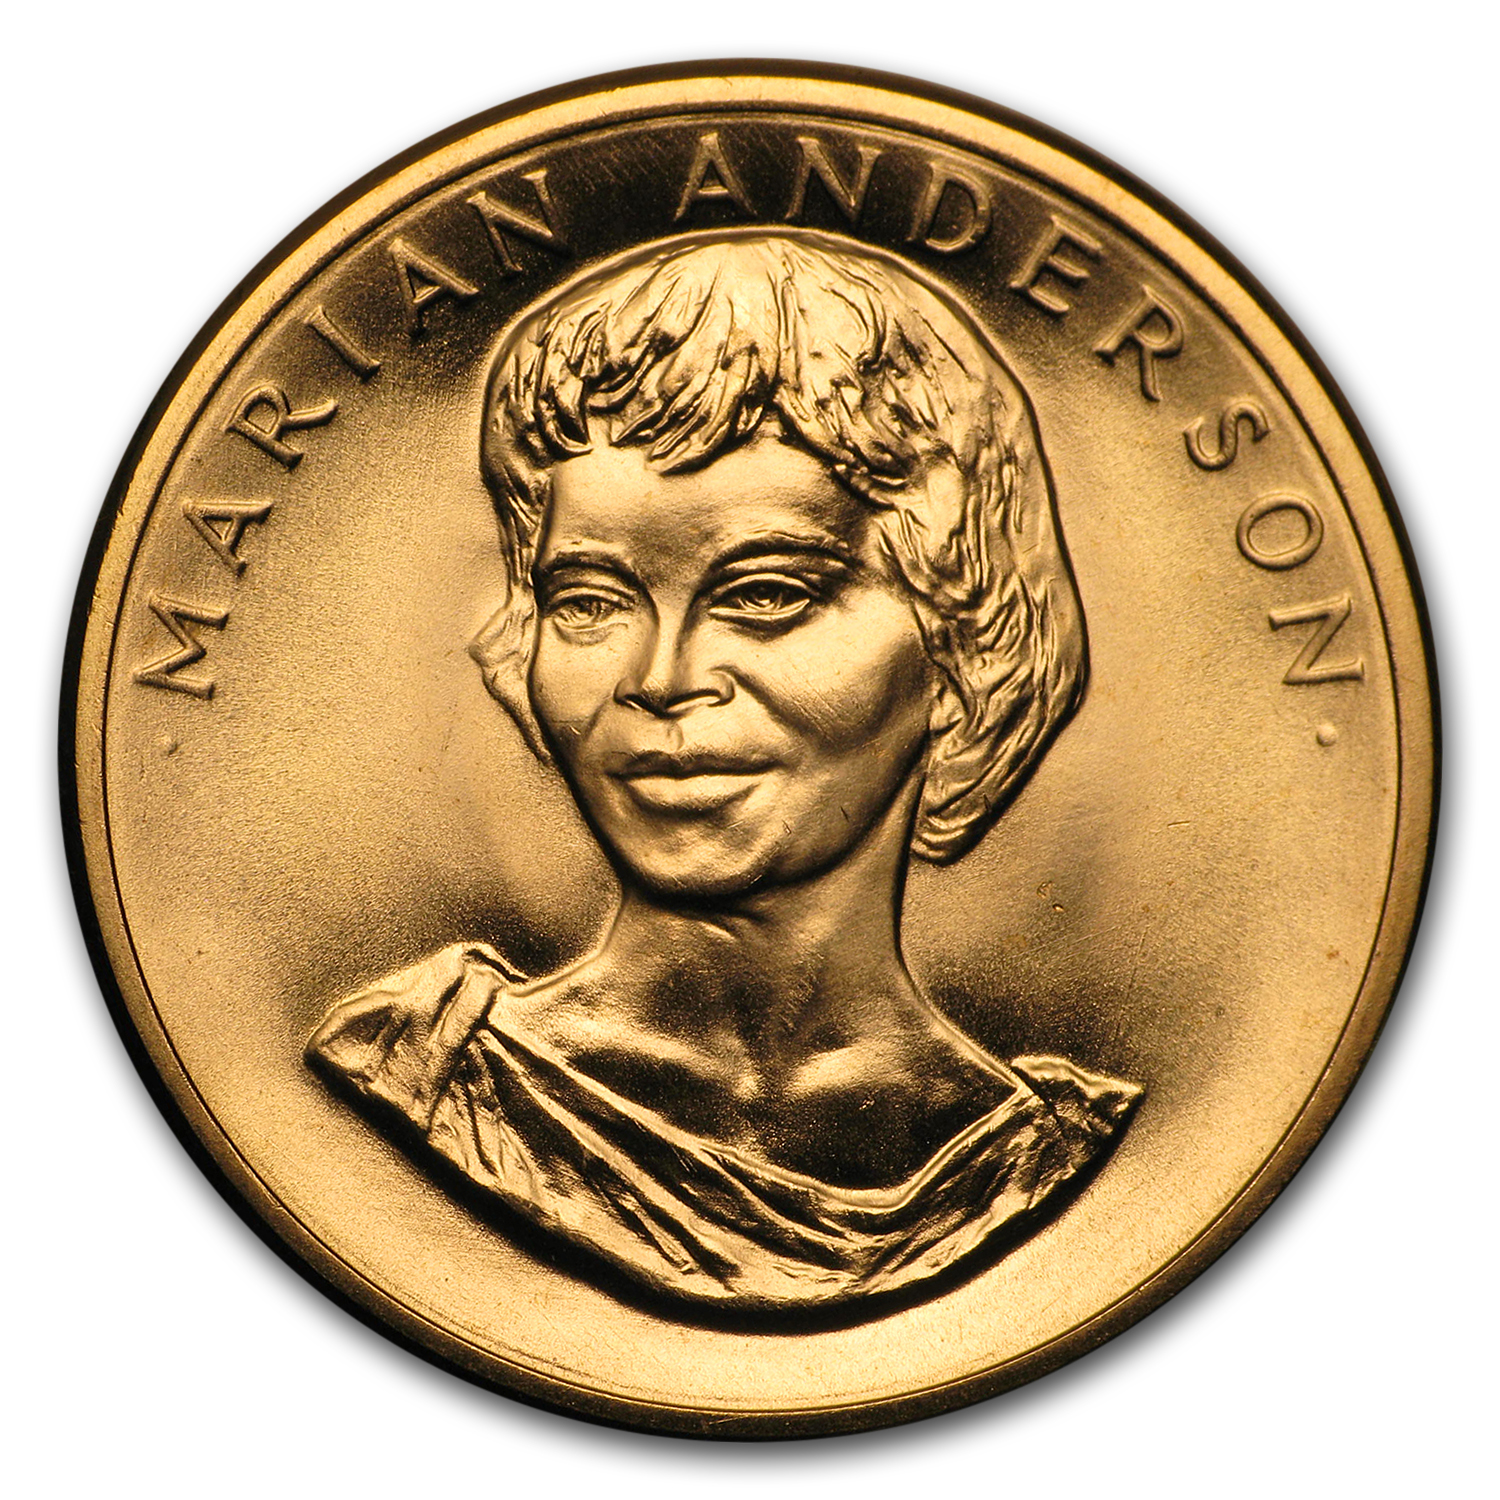 Buy U.S. Mint 1/2 oz Gold Commemorative Arts Medal Marian Anderson